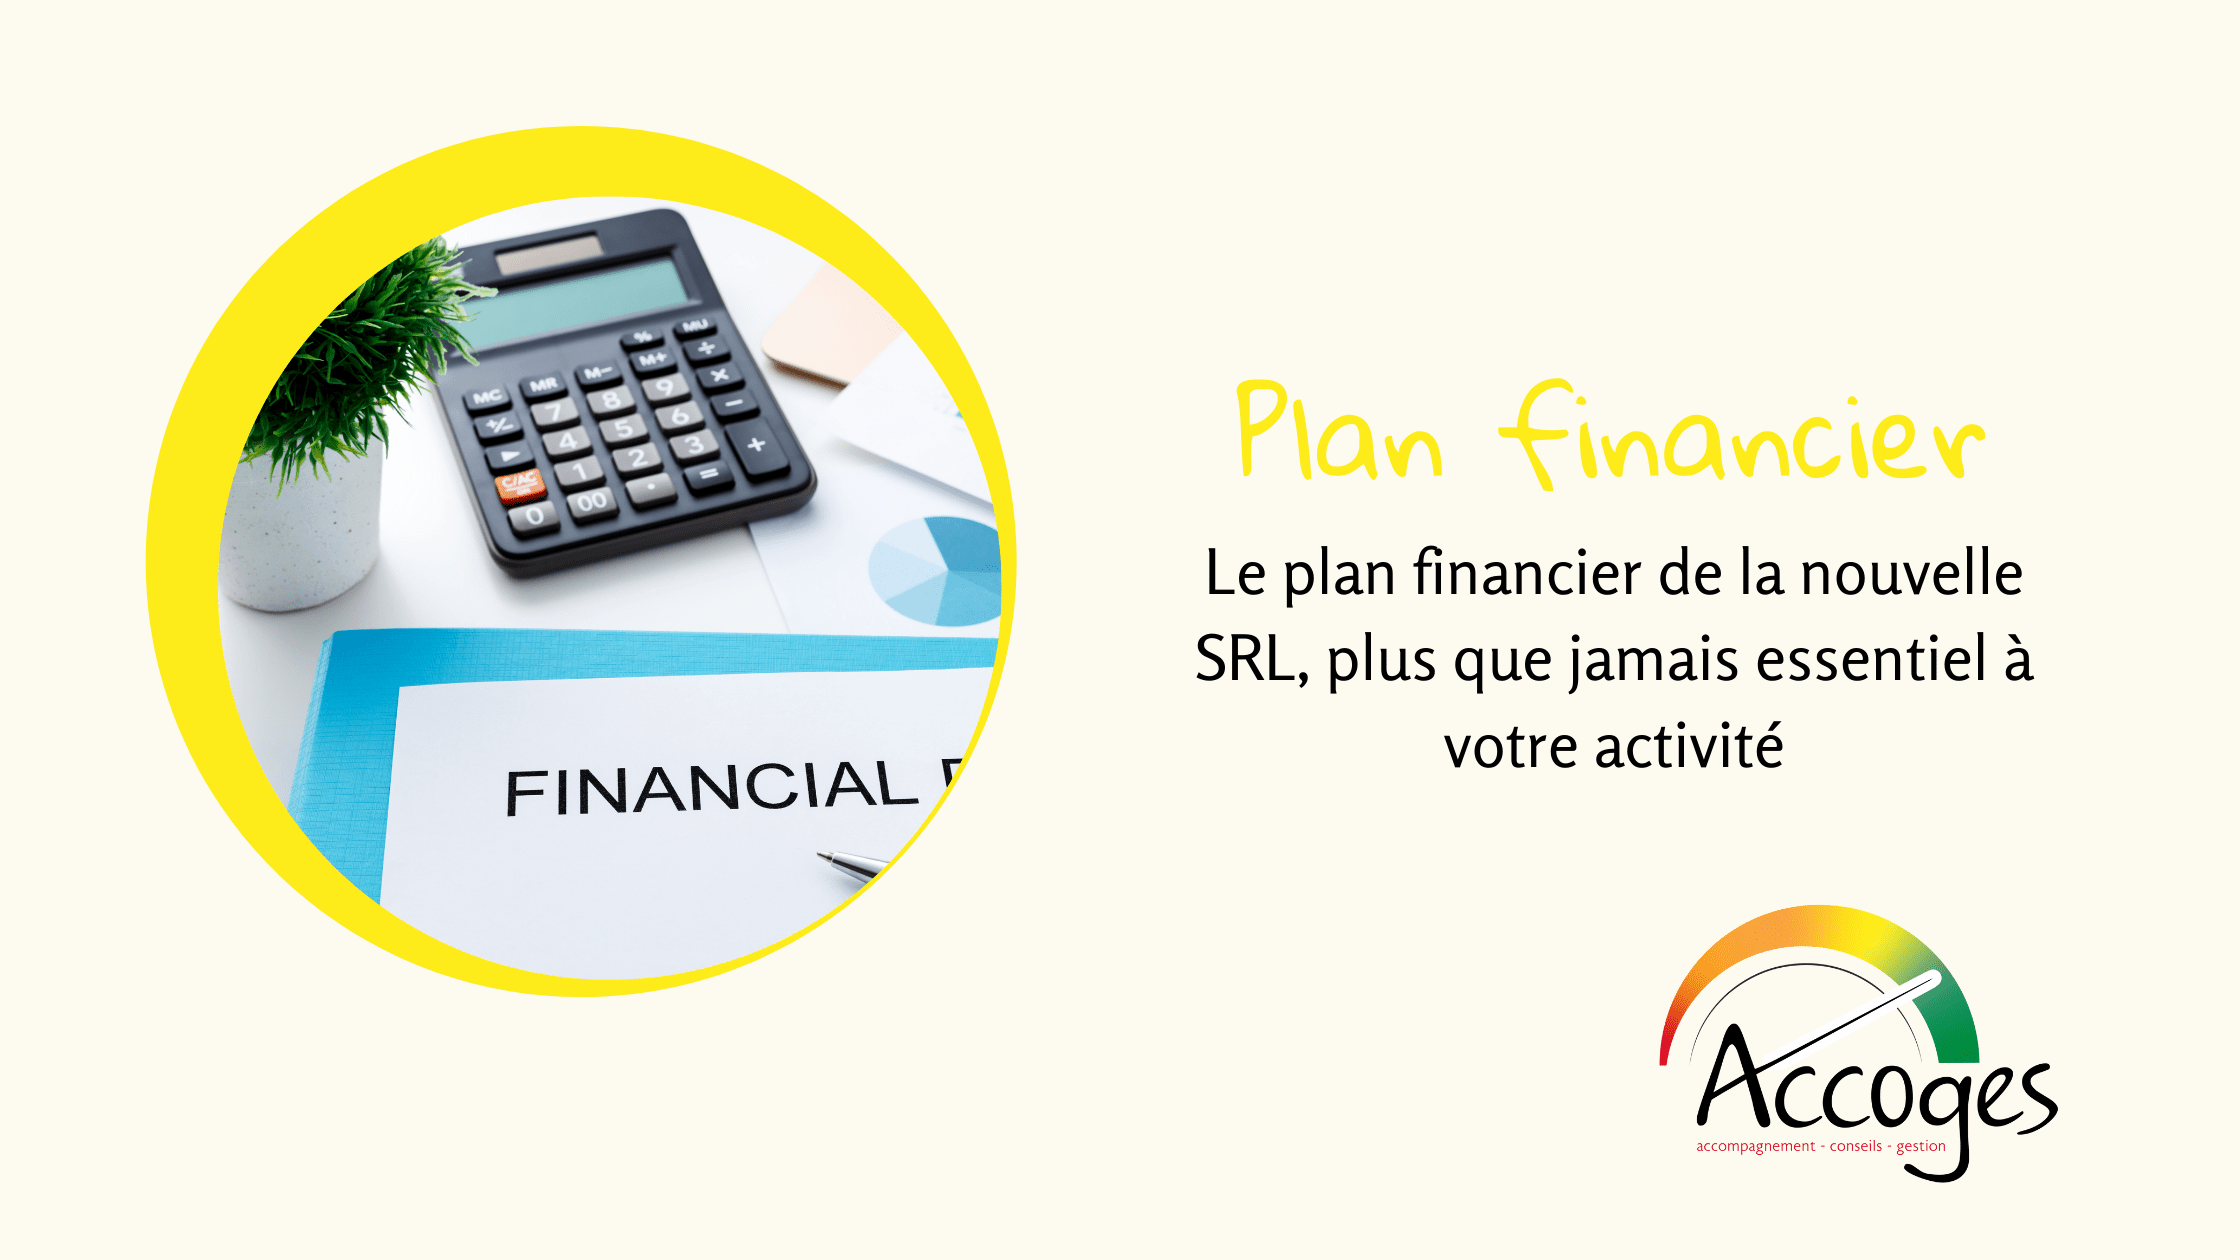 Le plan financier de la nouvelle SRL, plus que jamais essentiel à votre activité ! par Philippe Gossart expert comptable et fiscale certifié chez Accoges